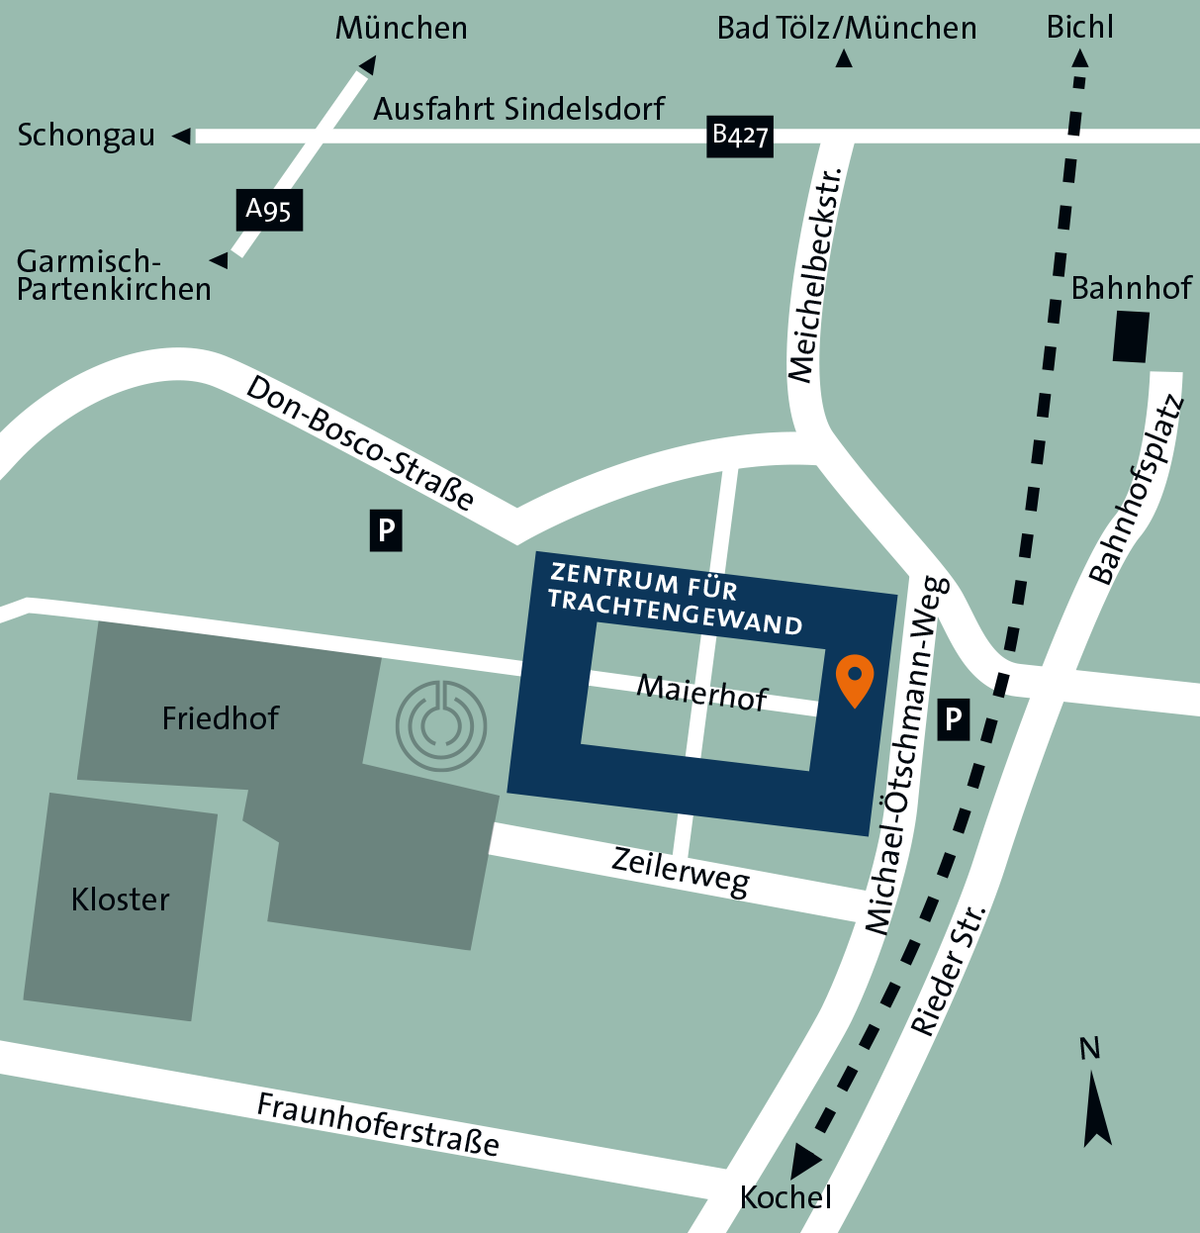 Die farbige Grafik zeigt Lage und Anfahrtsweg zum Zentrum für Trachtengewand in Benediktbeuern.